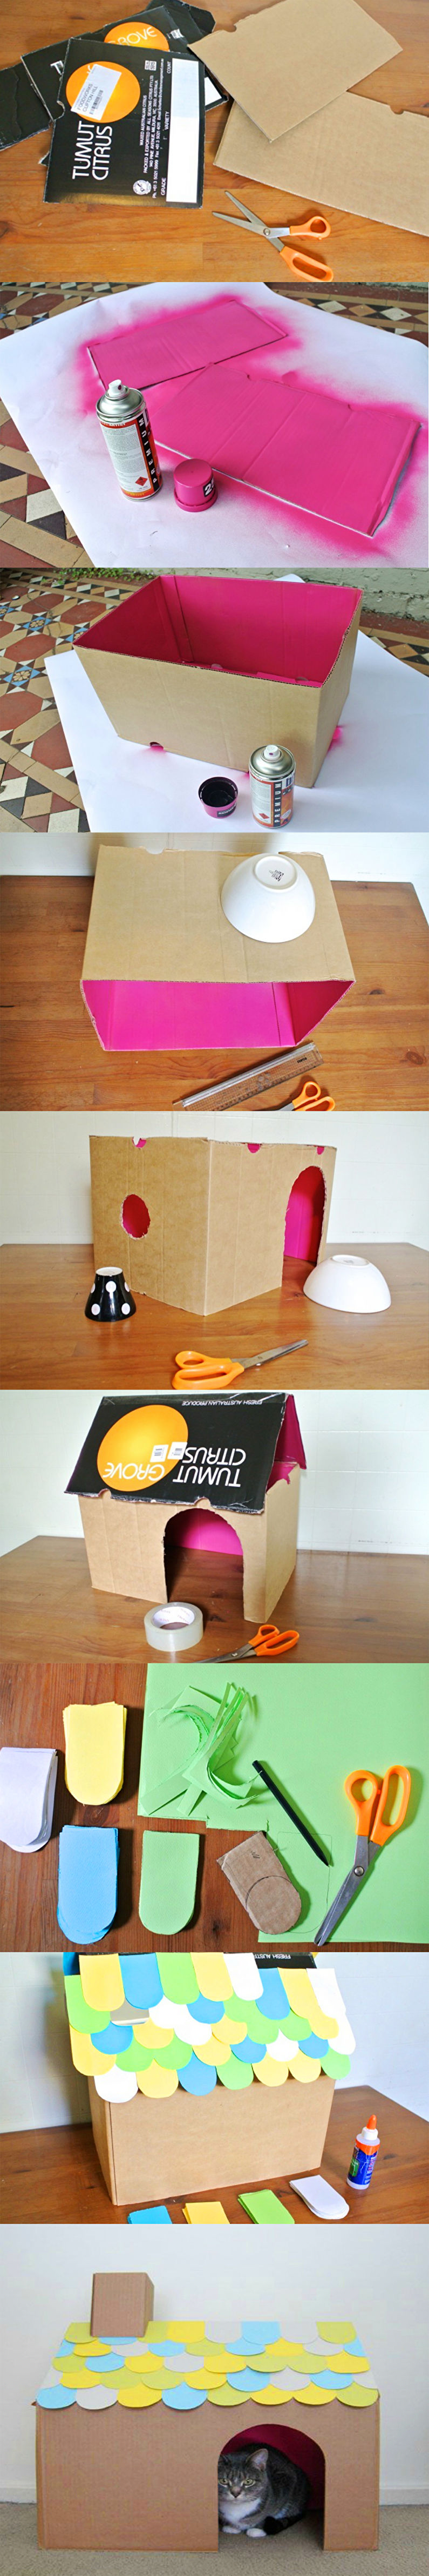 DIY Cat House - Casa simples de papelão